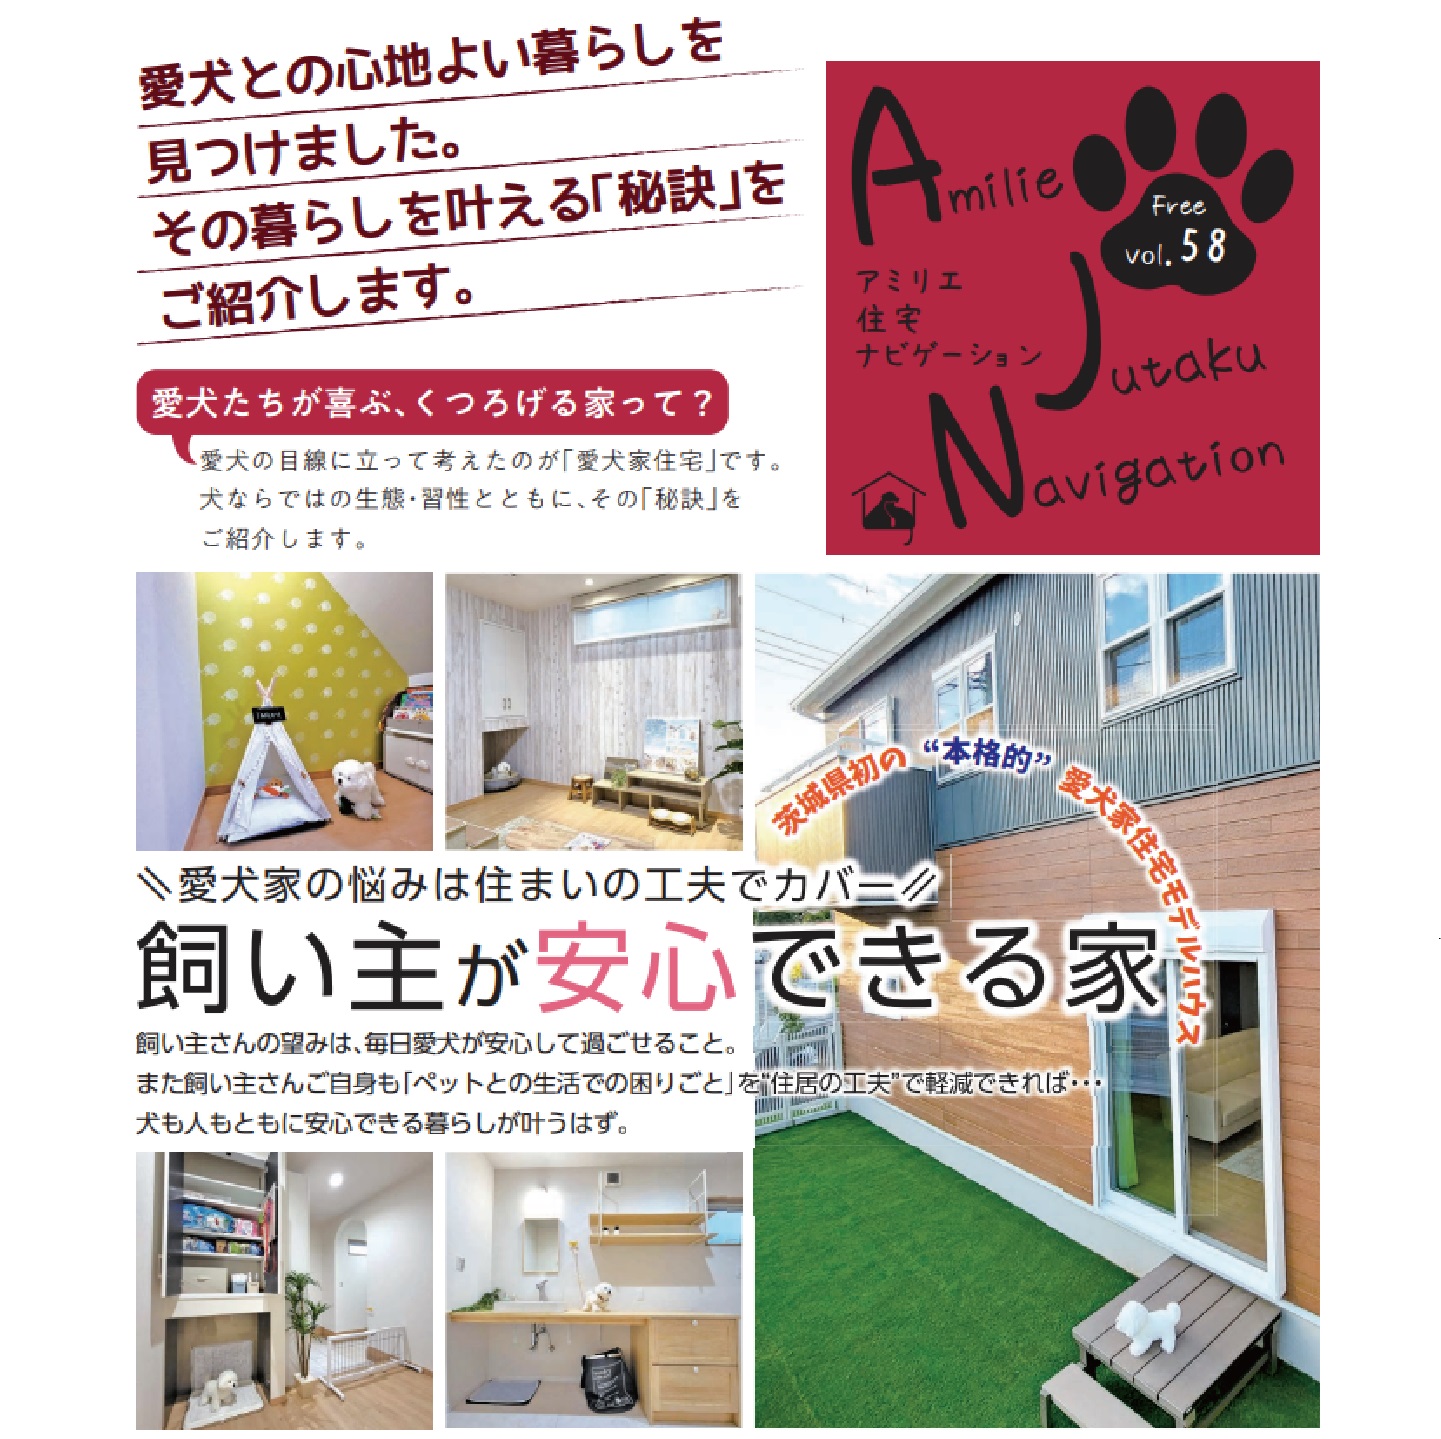 【お知らせ】愛犬愛猫家住宅ナビゲーションAJNにタクミモデルハウスが紹介されました!!!